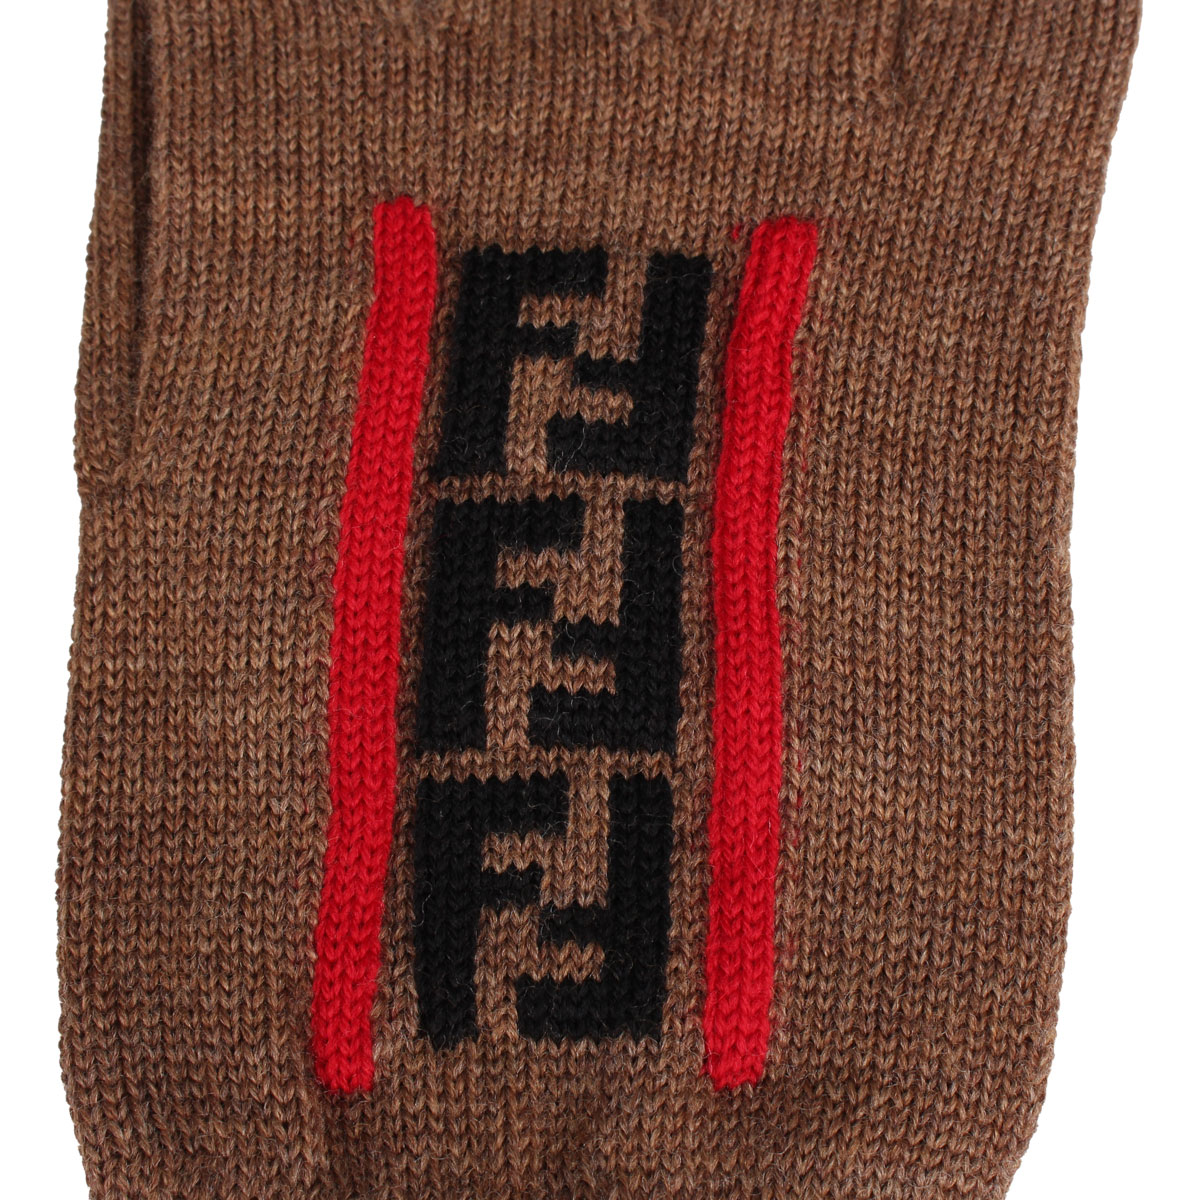 フェンディ グローブ ... : バッグ・雑貨 FENDI 手袋 日本製低価